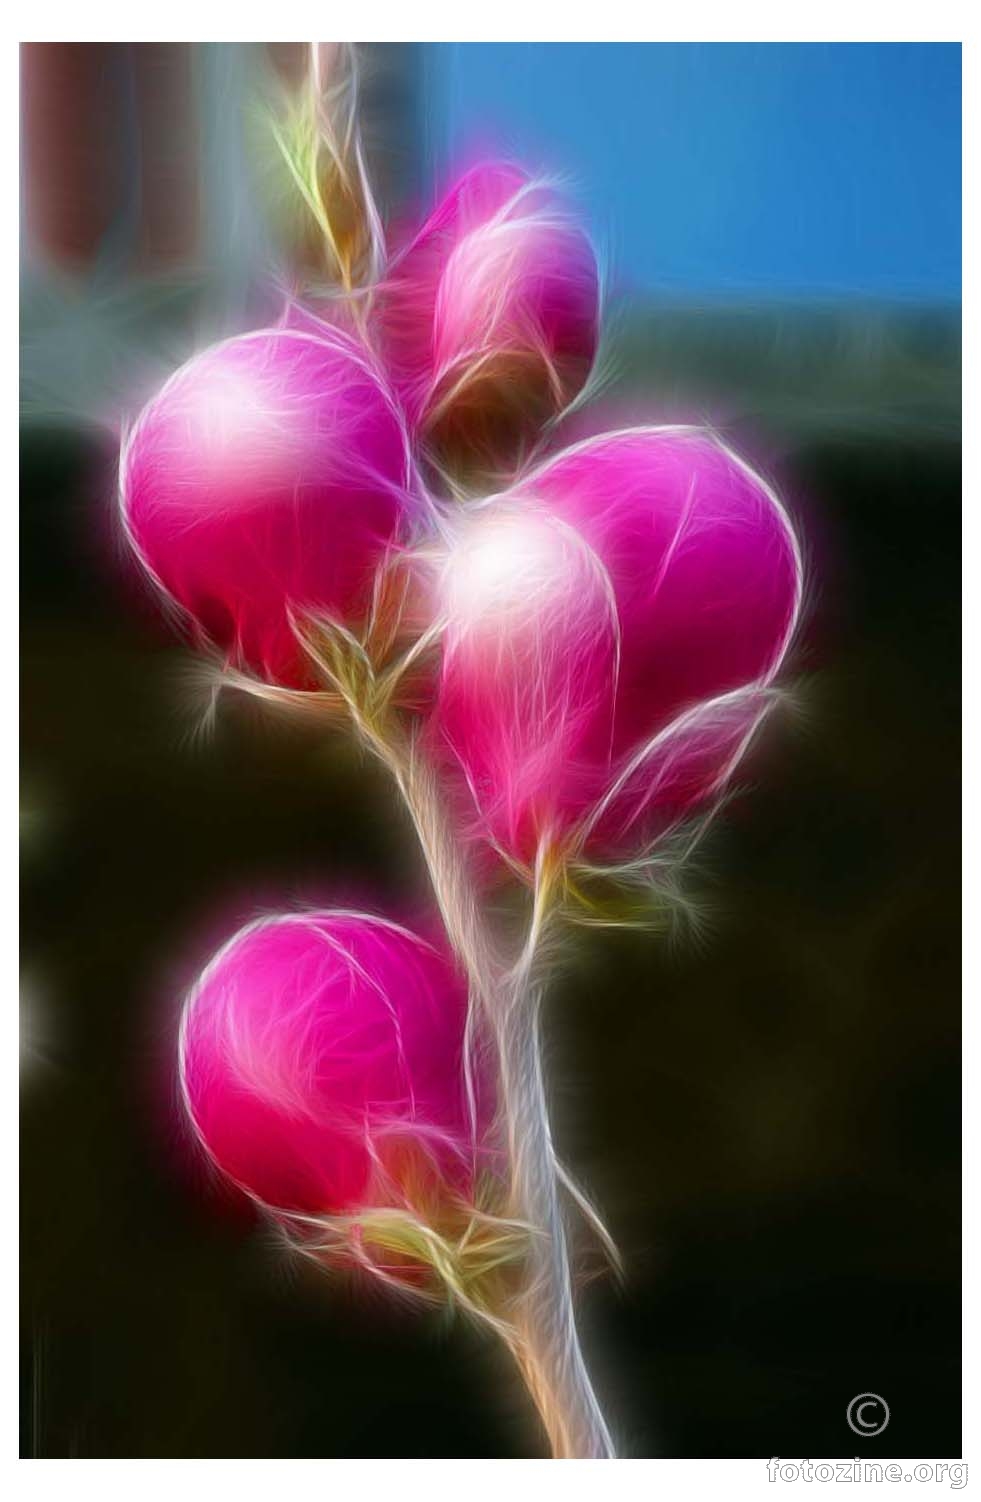 razigrana magnolija